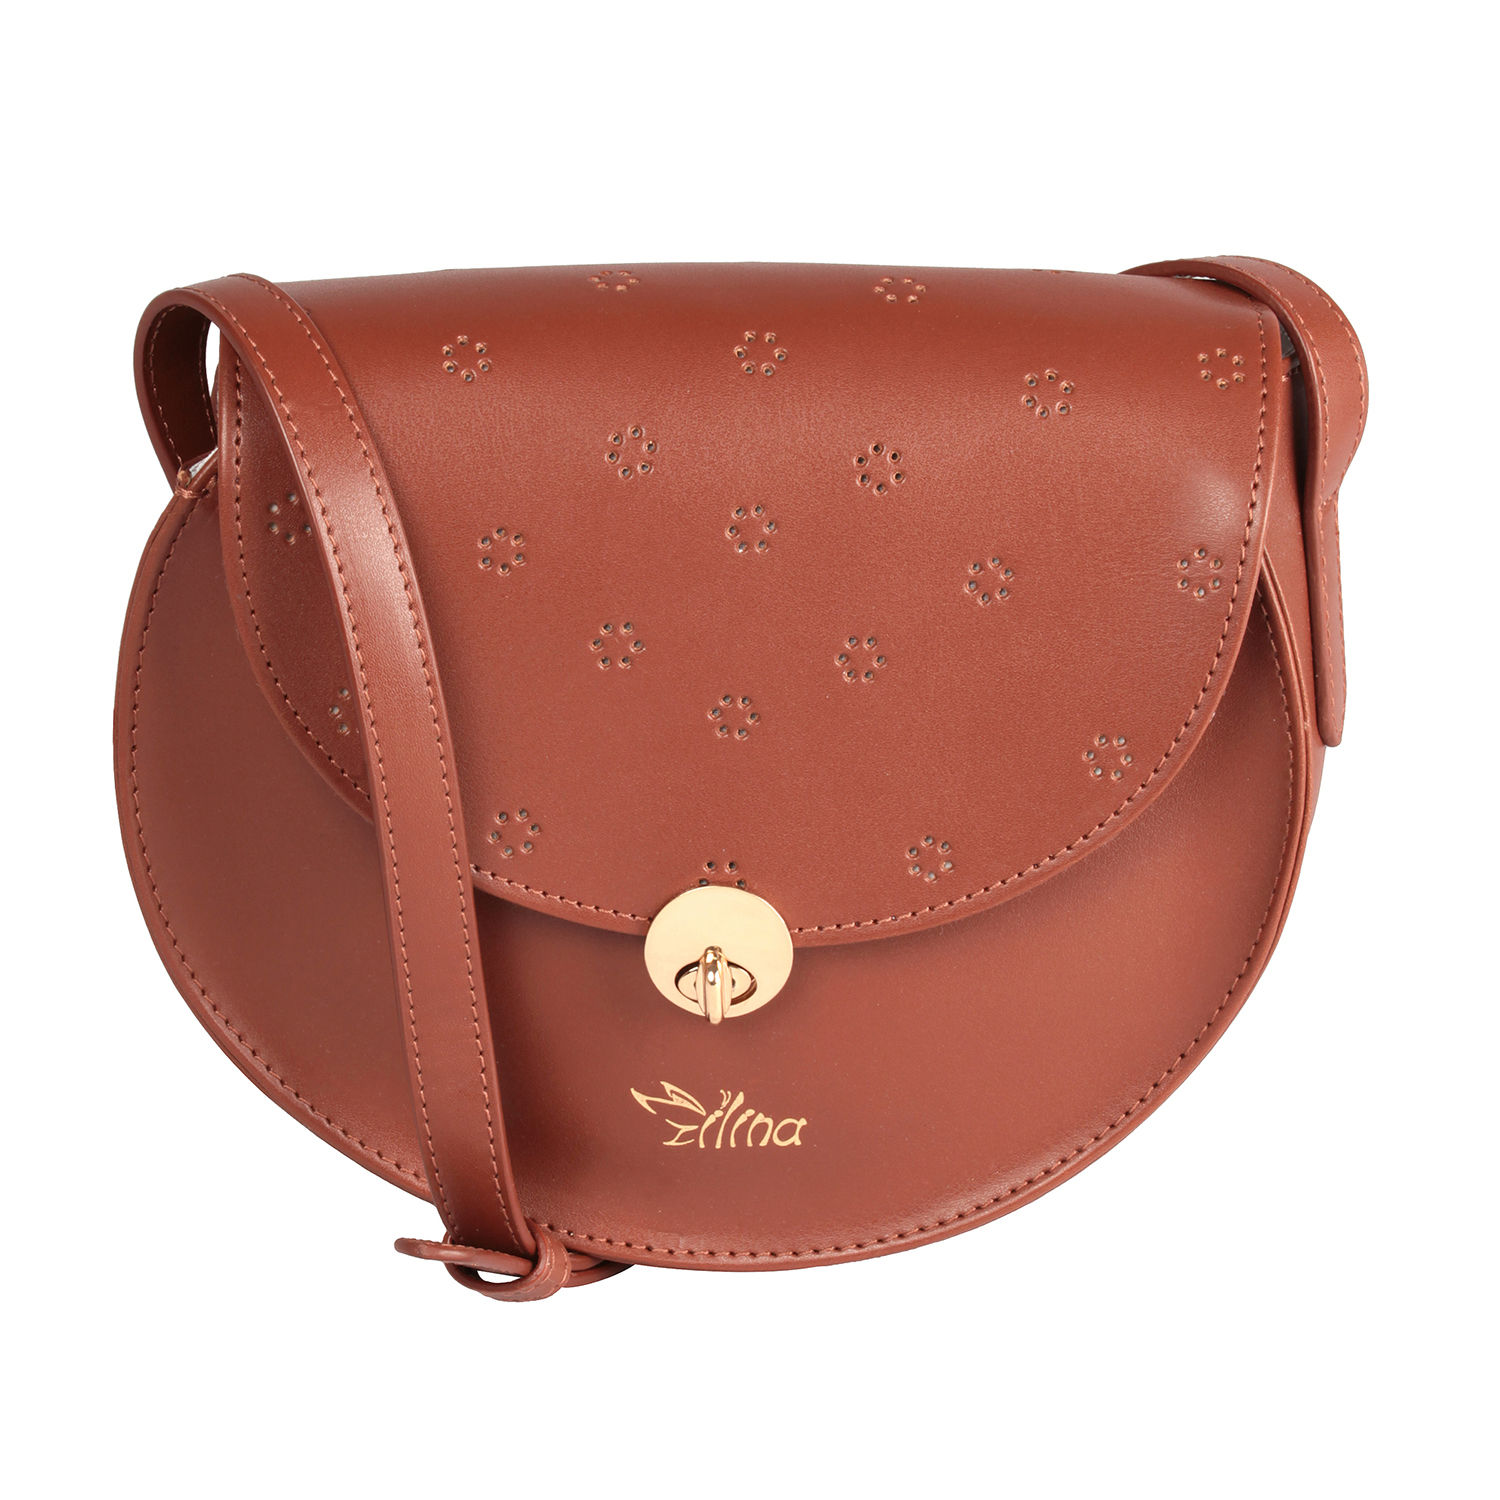 Buy/Send Personalised Beautiful Sling Bag Online- FNP